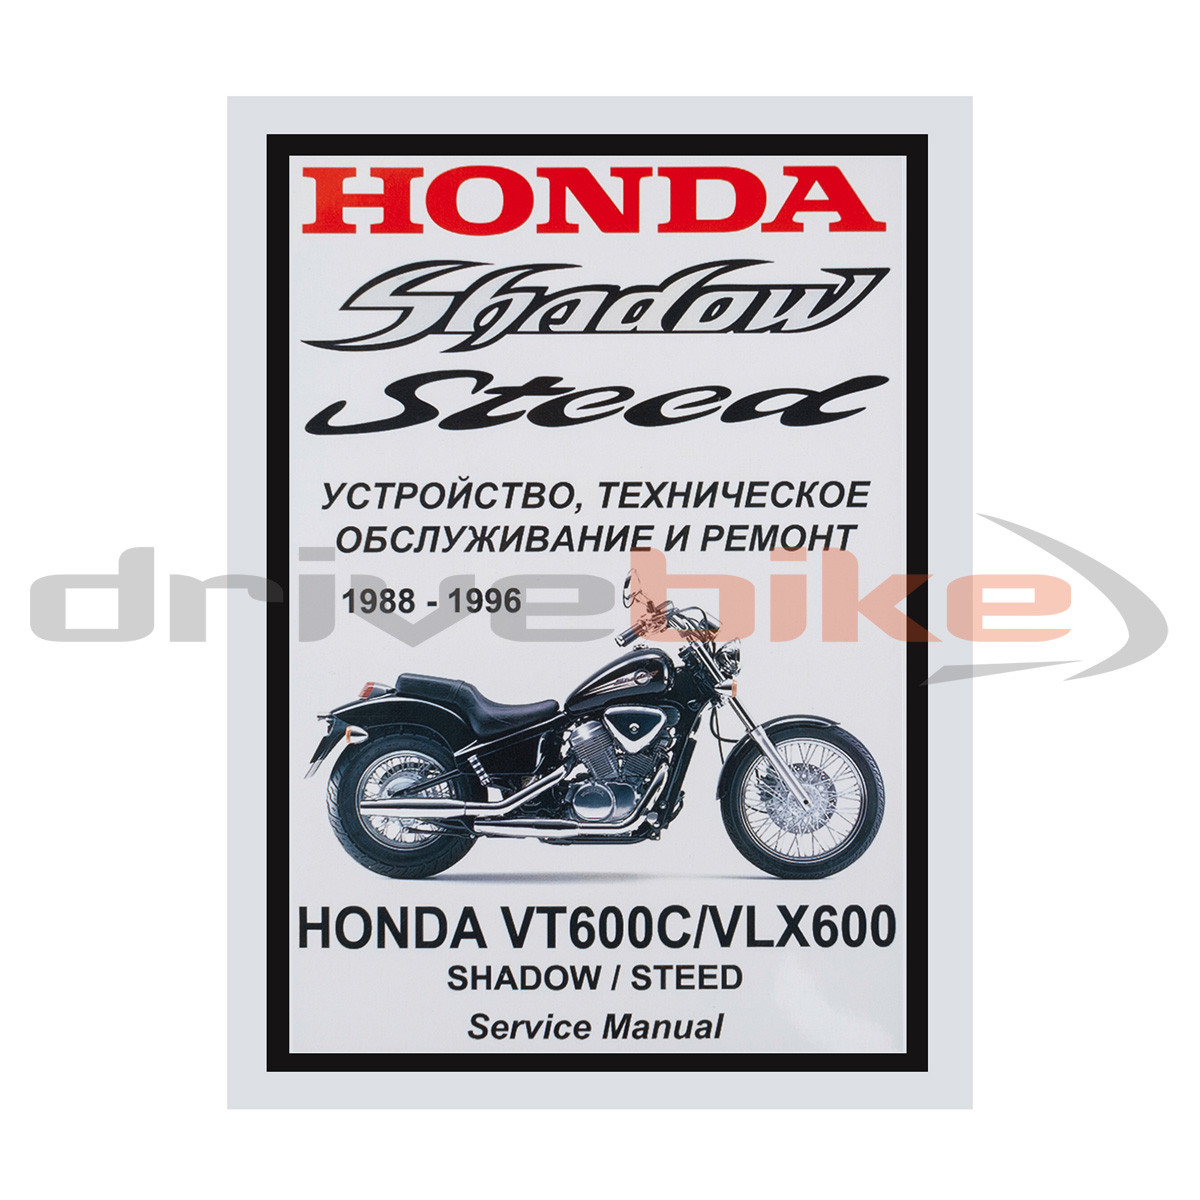 Мануалы и документация для Honda Steed 600 (VT600)